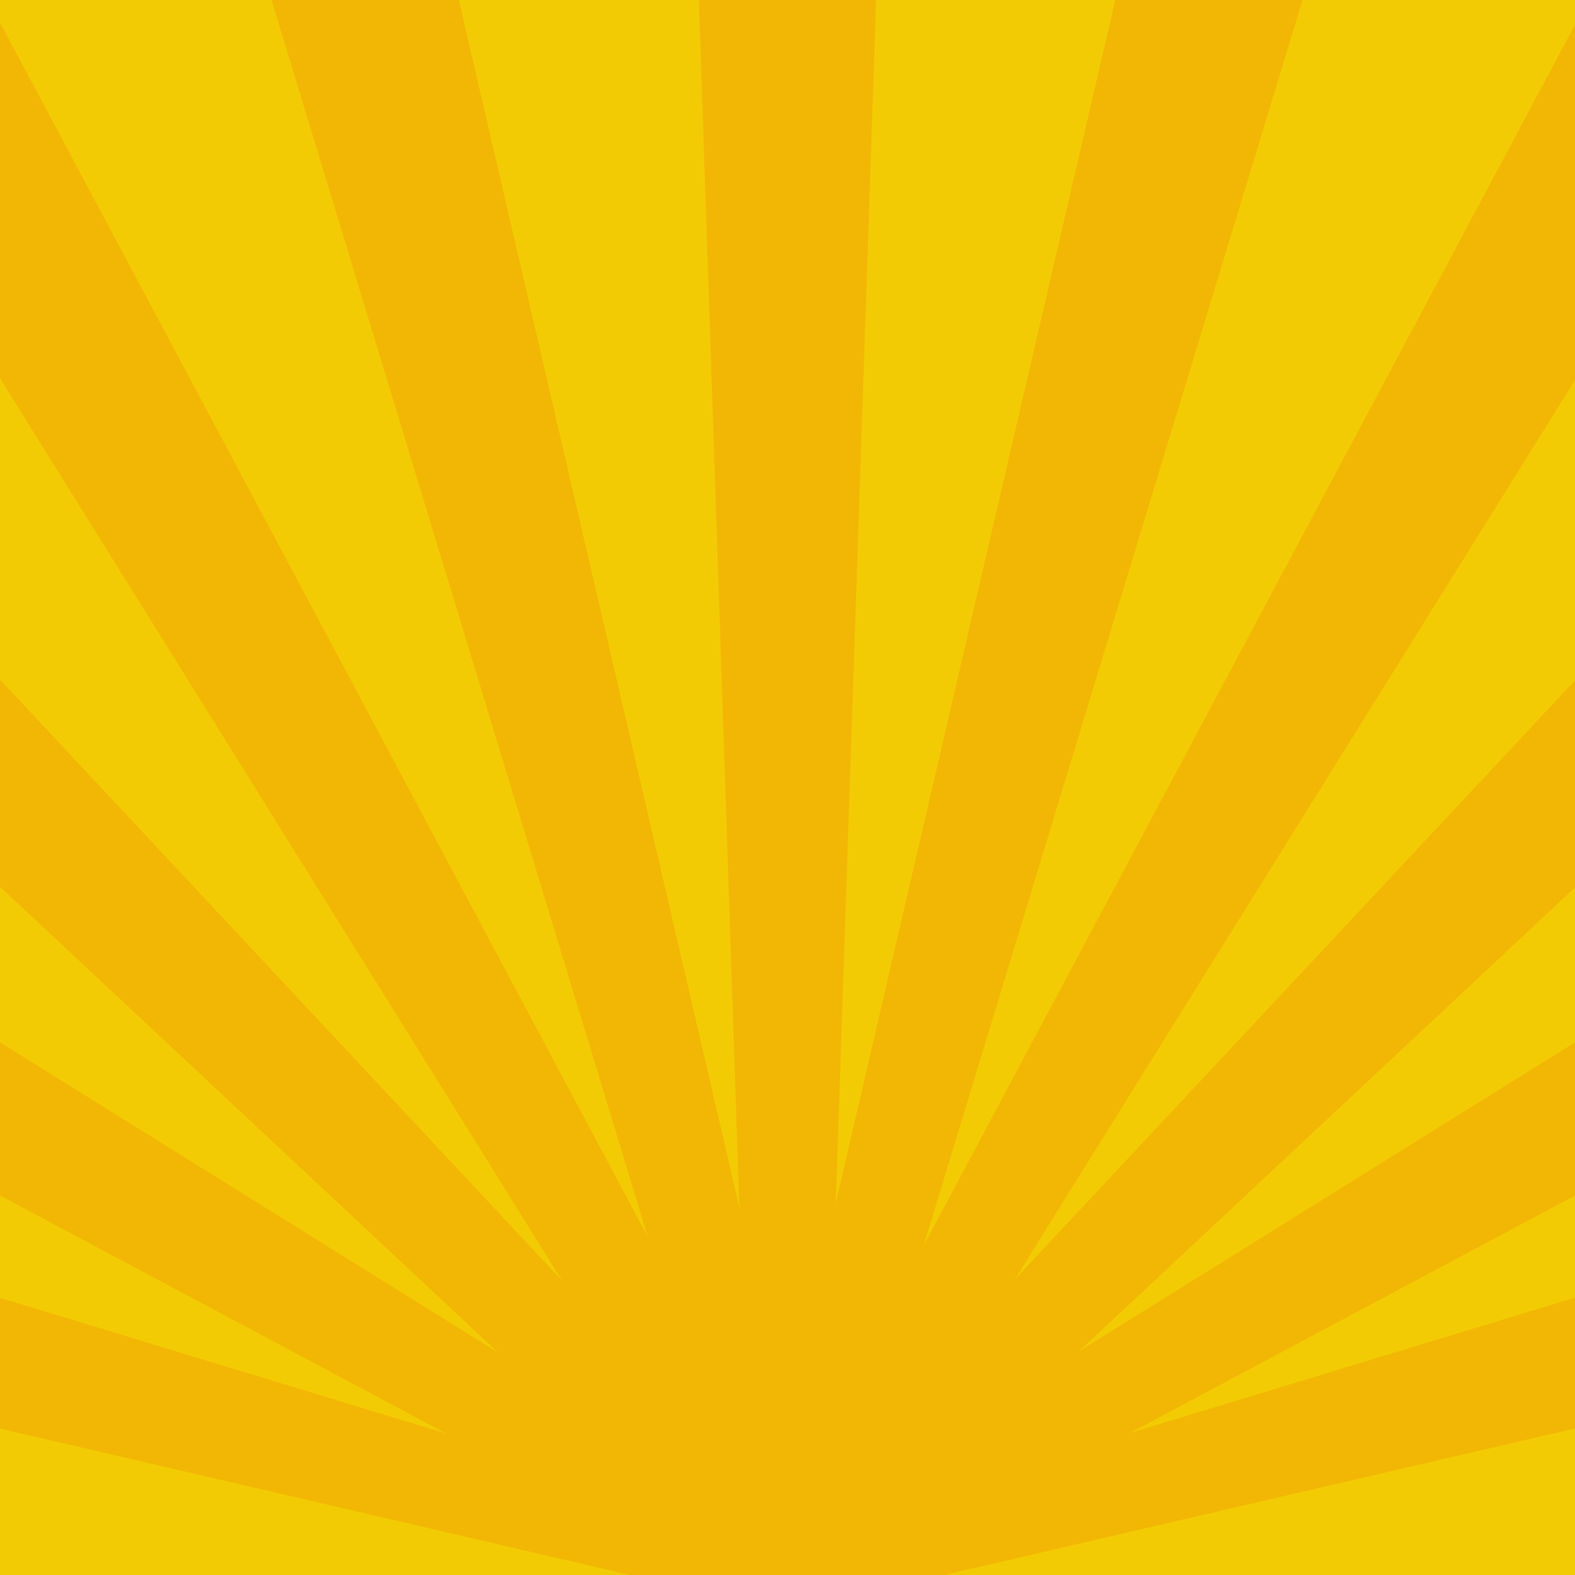 Yellow and Orange Sunburst Background